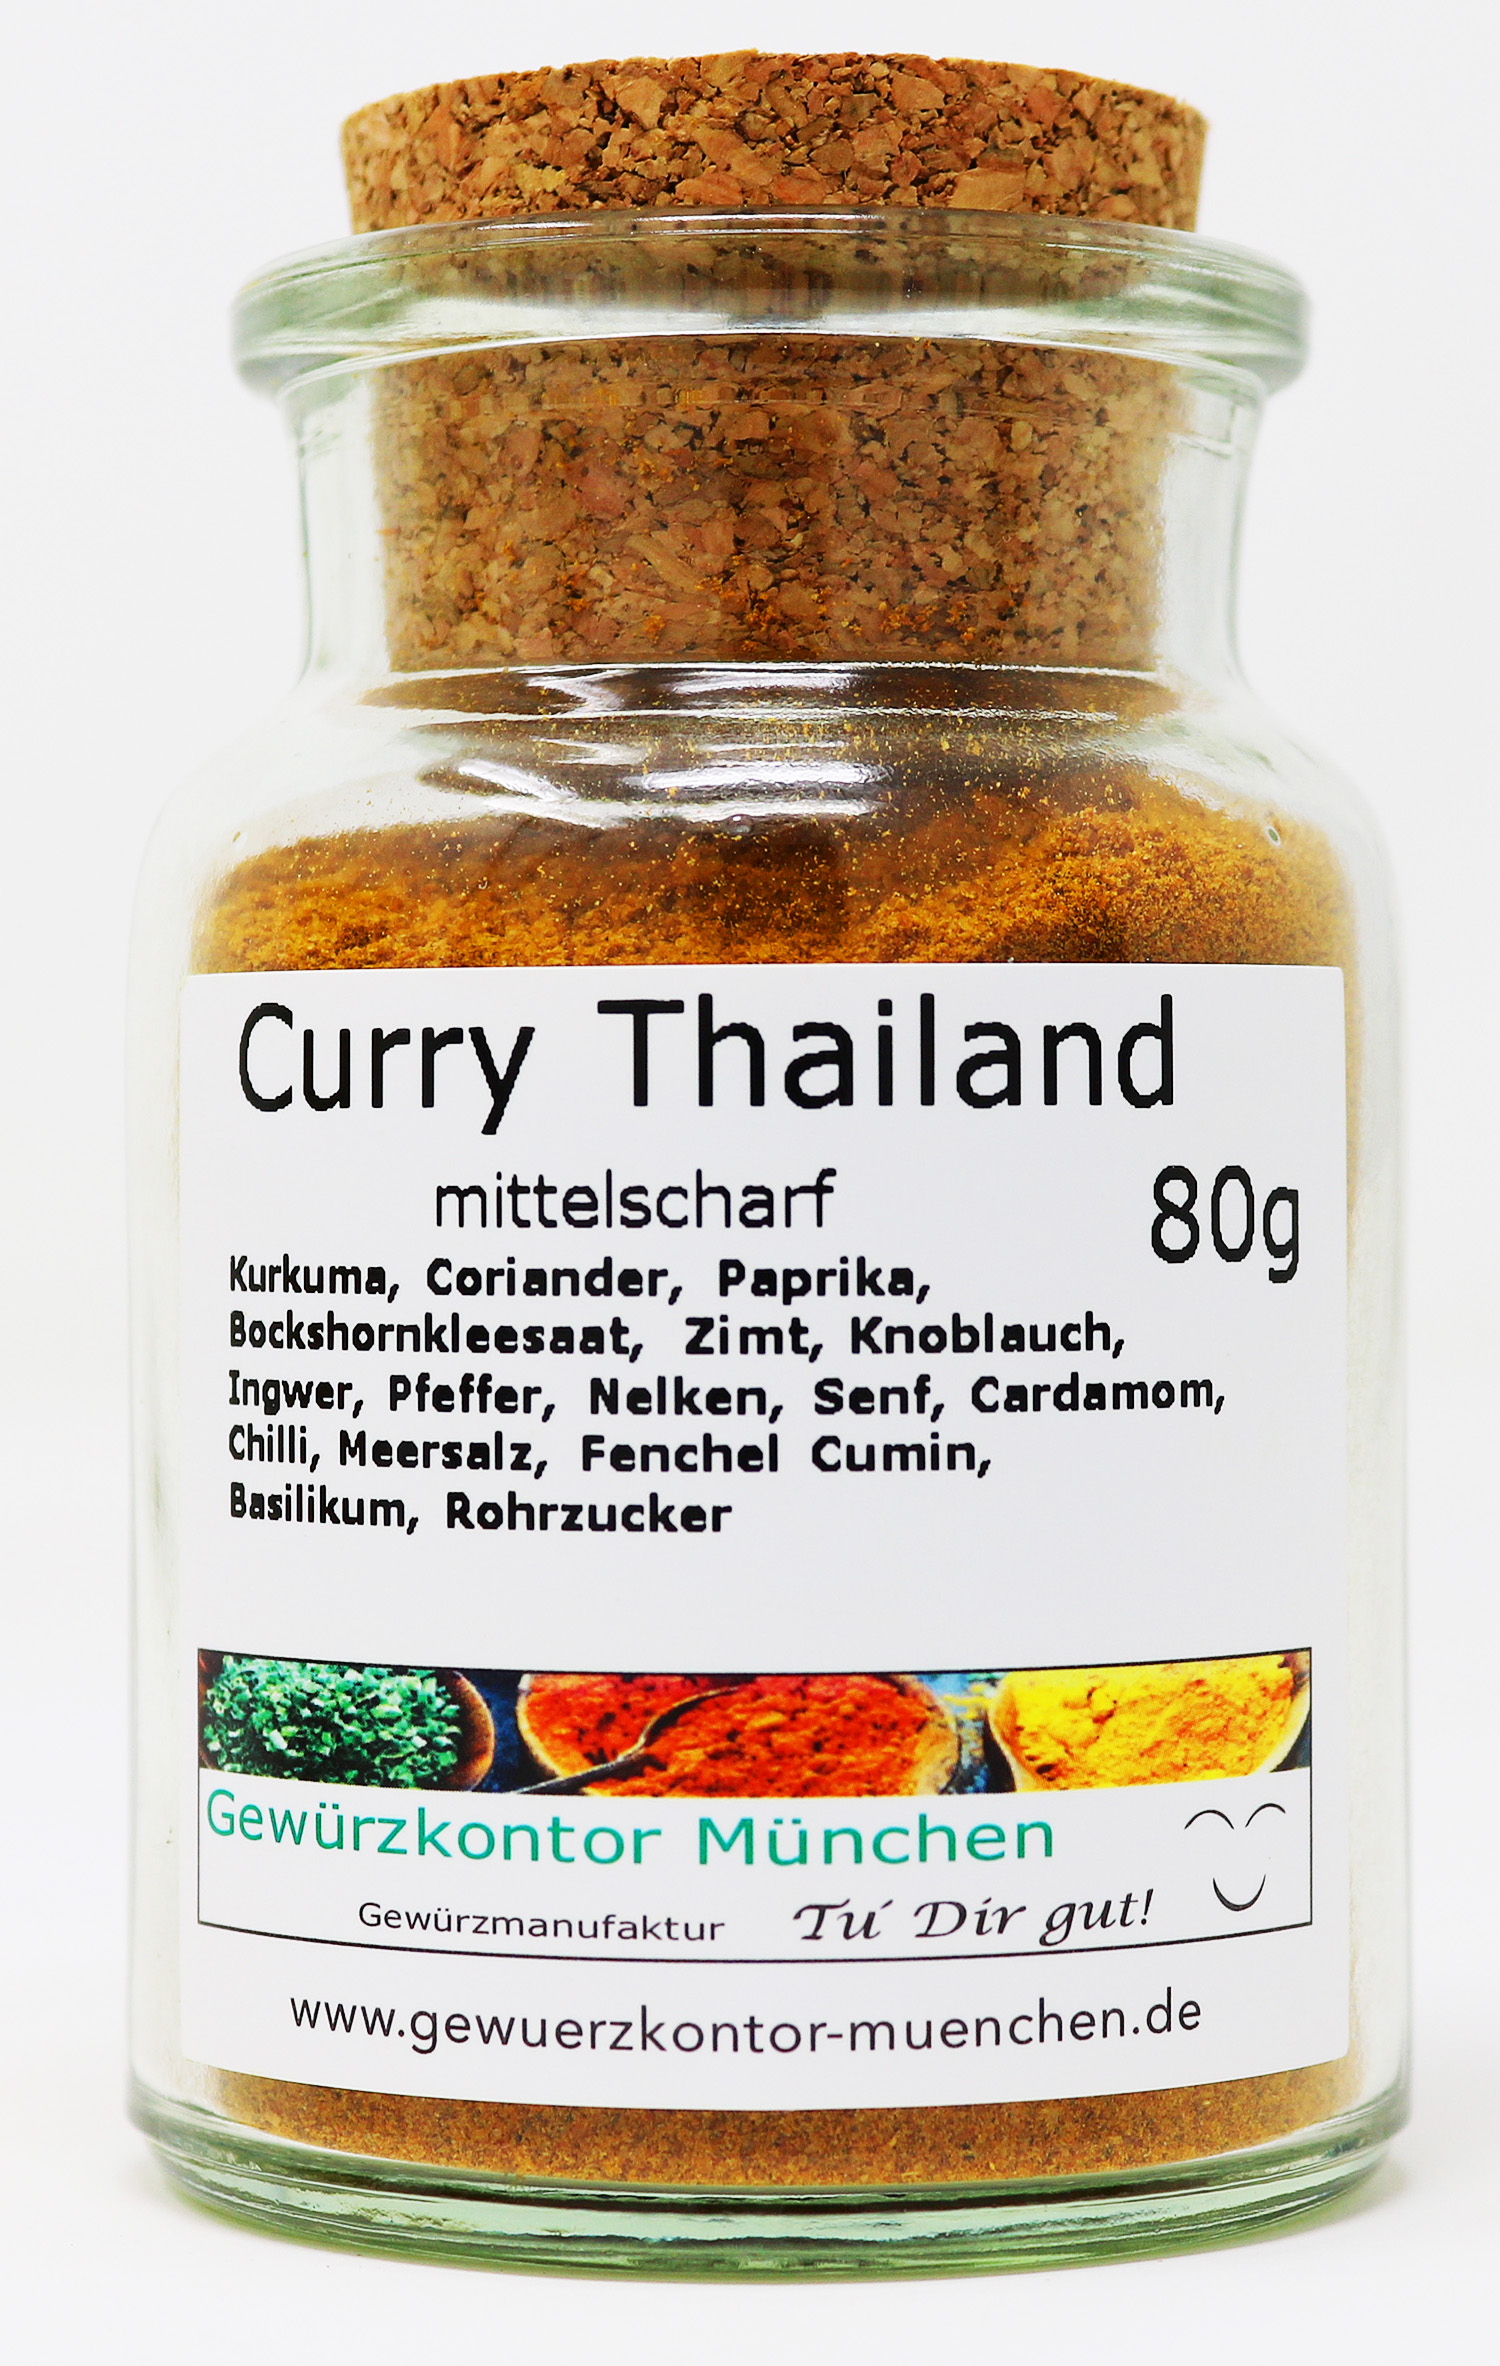 Curry Thailand, mittelscharf 70g im Glas